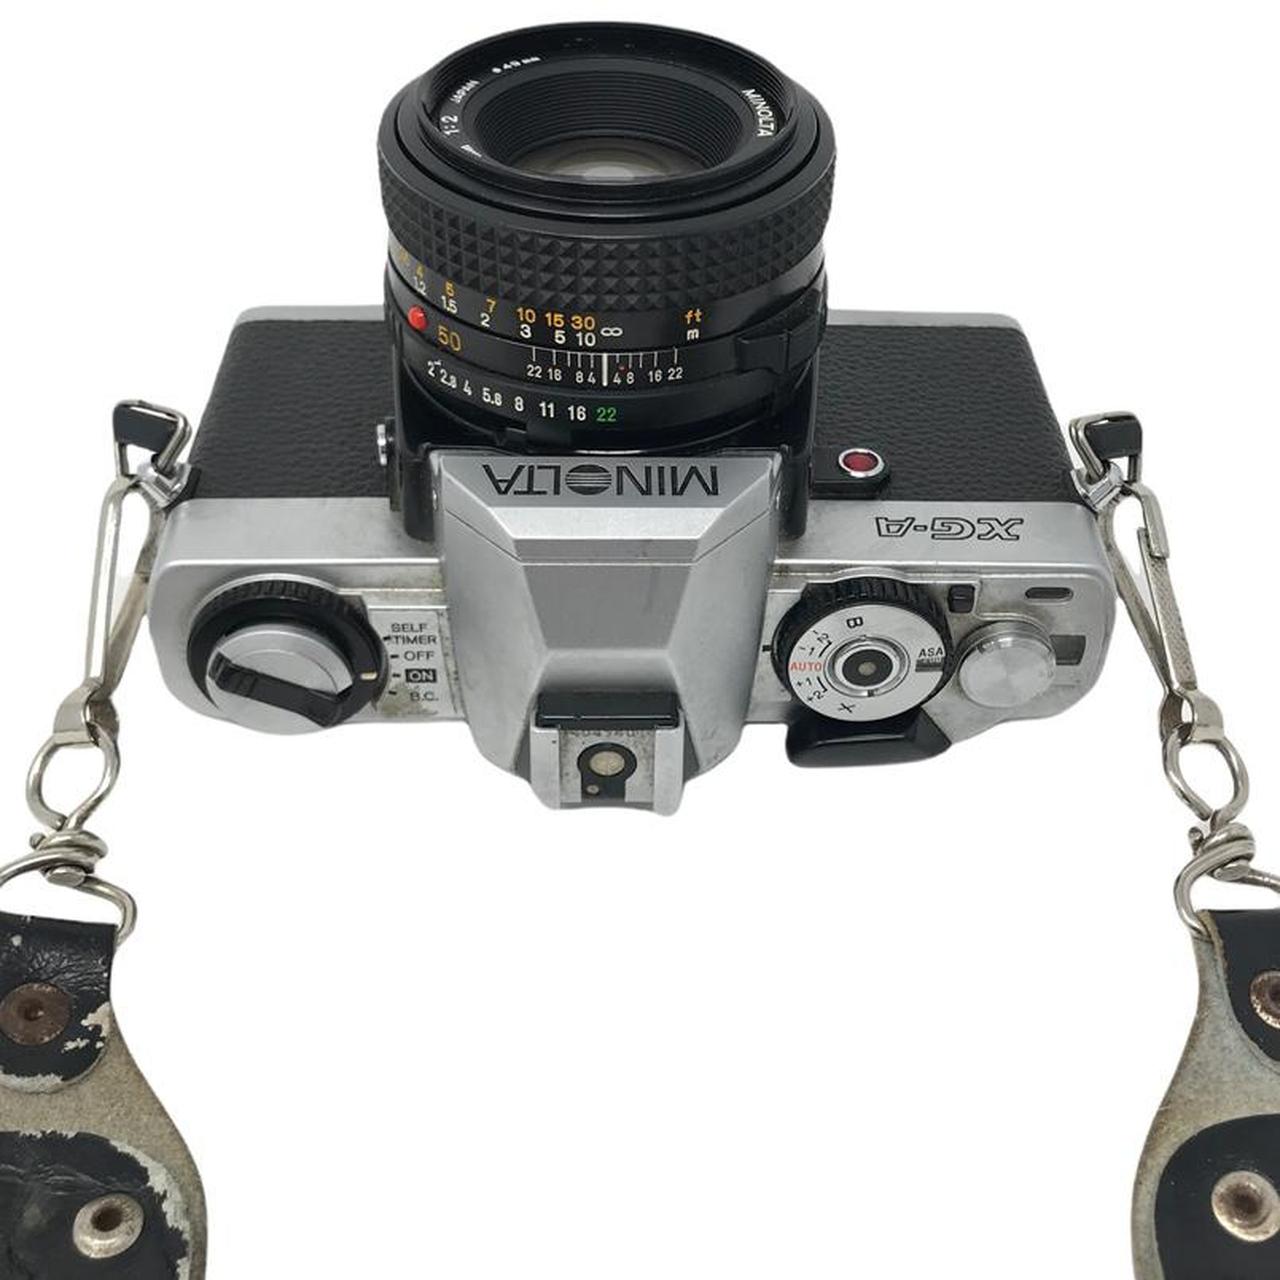 Product Image 3 - Minolta XG-A 35mm Film Camera

Comes